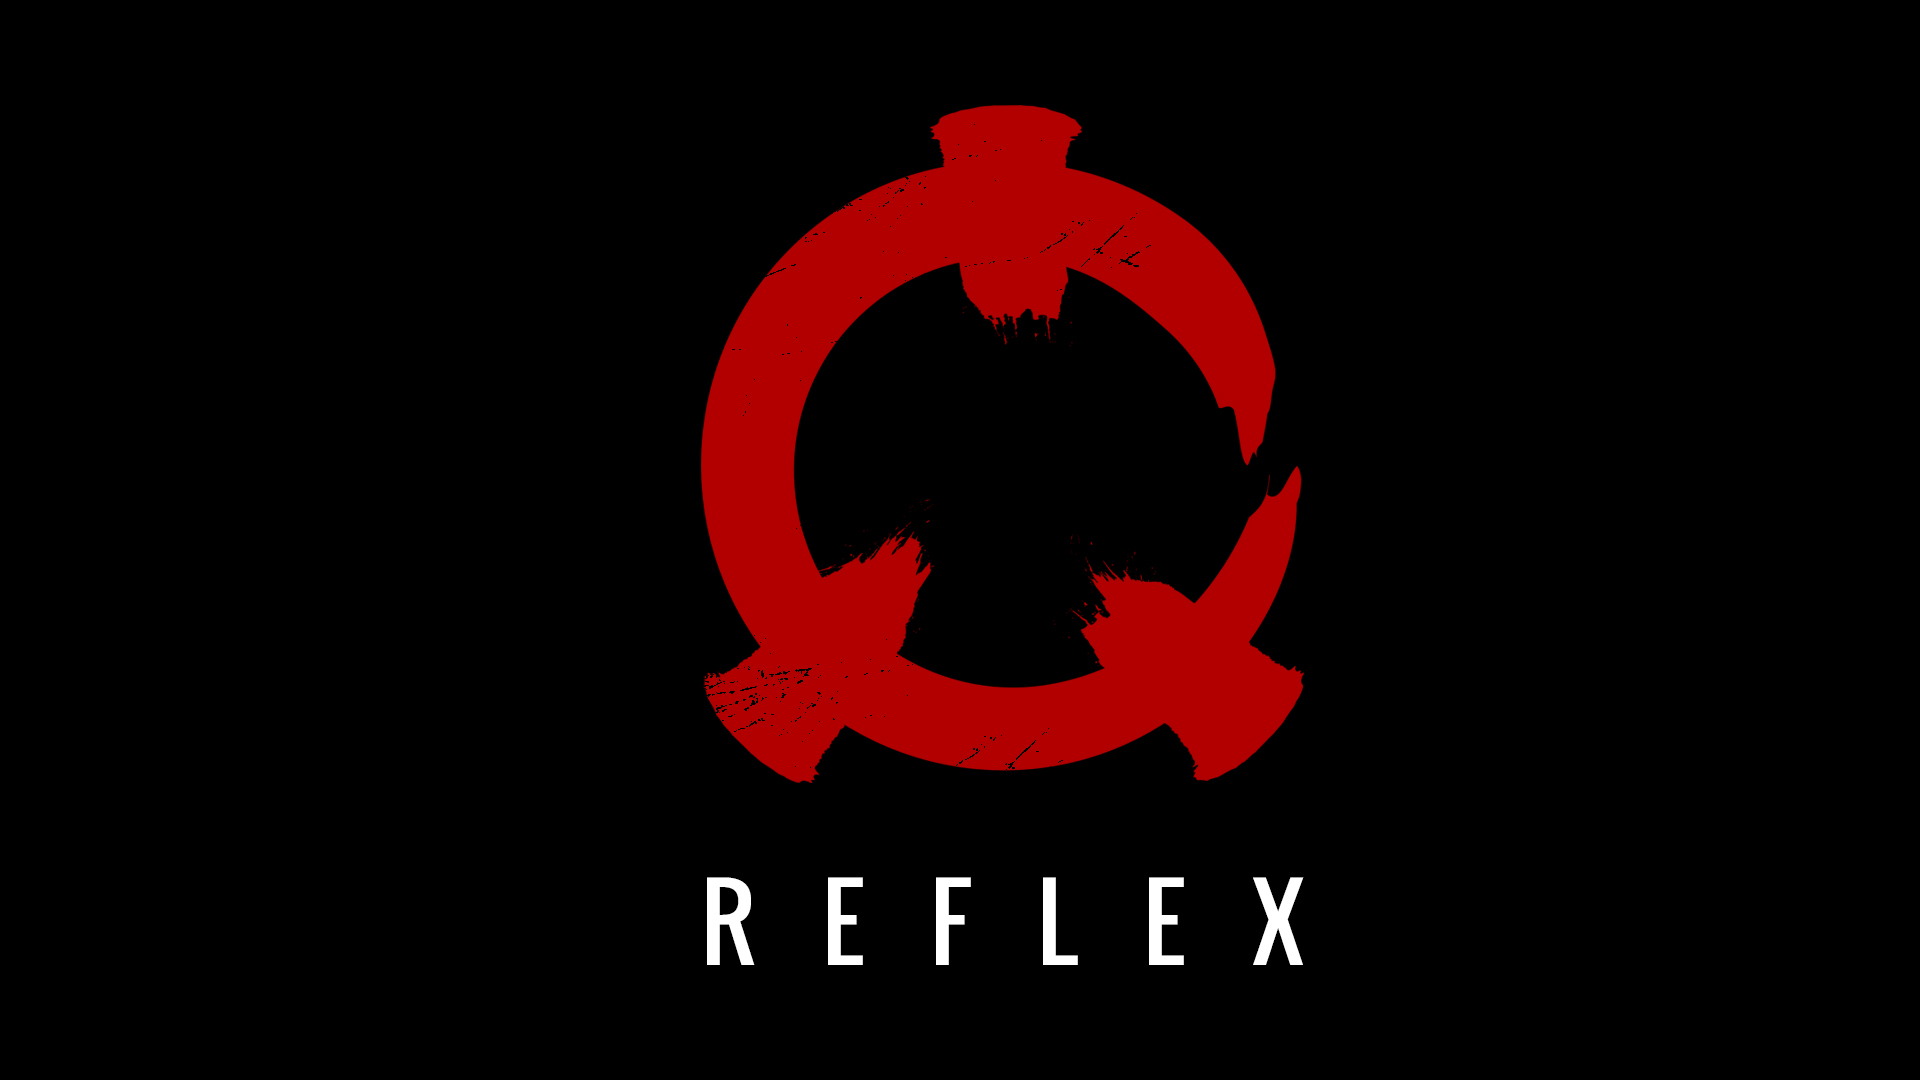 Reflex Kickstarter Oc3d Forums